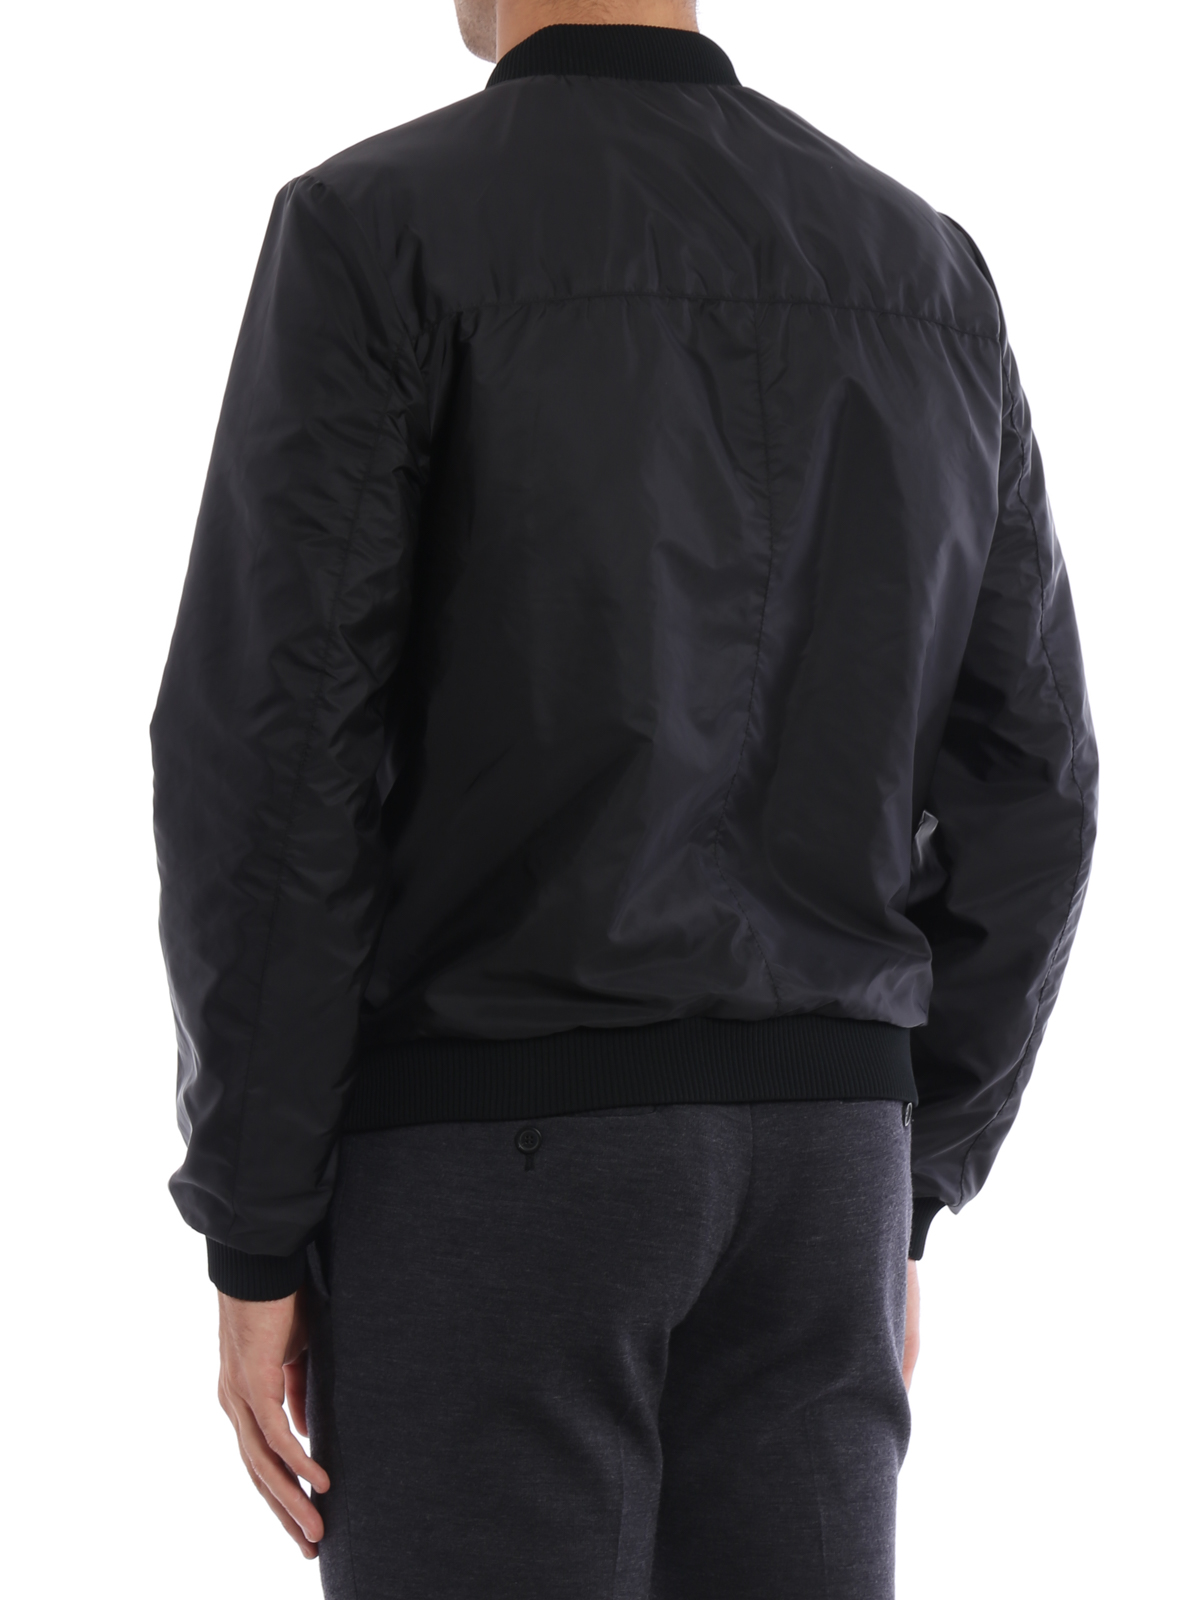 circulatie rek ventilatie Leather jacket Prada - Reversible napa bomber jacket - UPW098038002